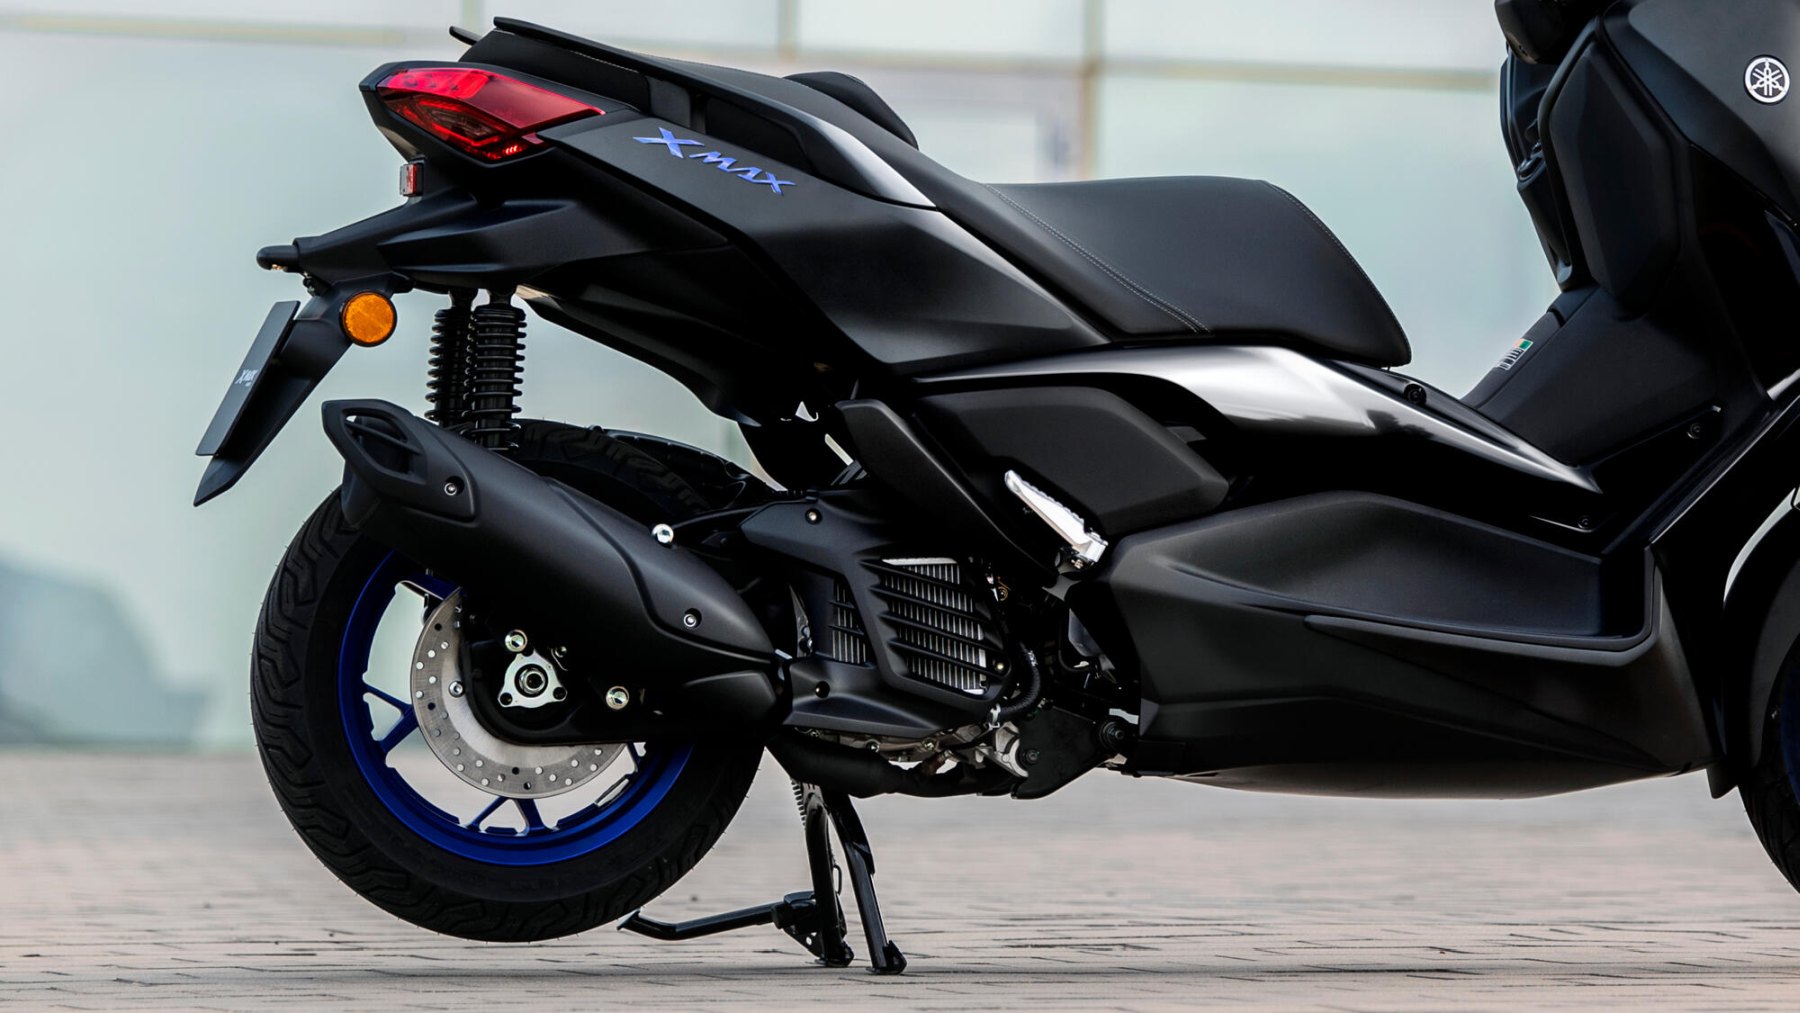 Vista lateral del Yamaha X-Max 125cc mostrando su diseño aerodinámico y compacto.